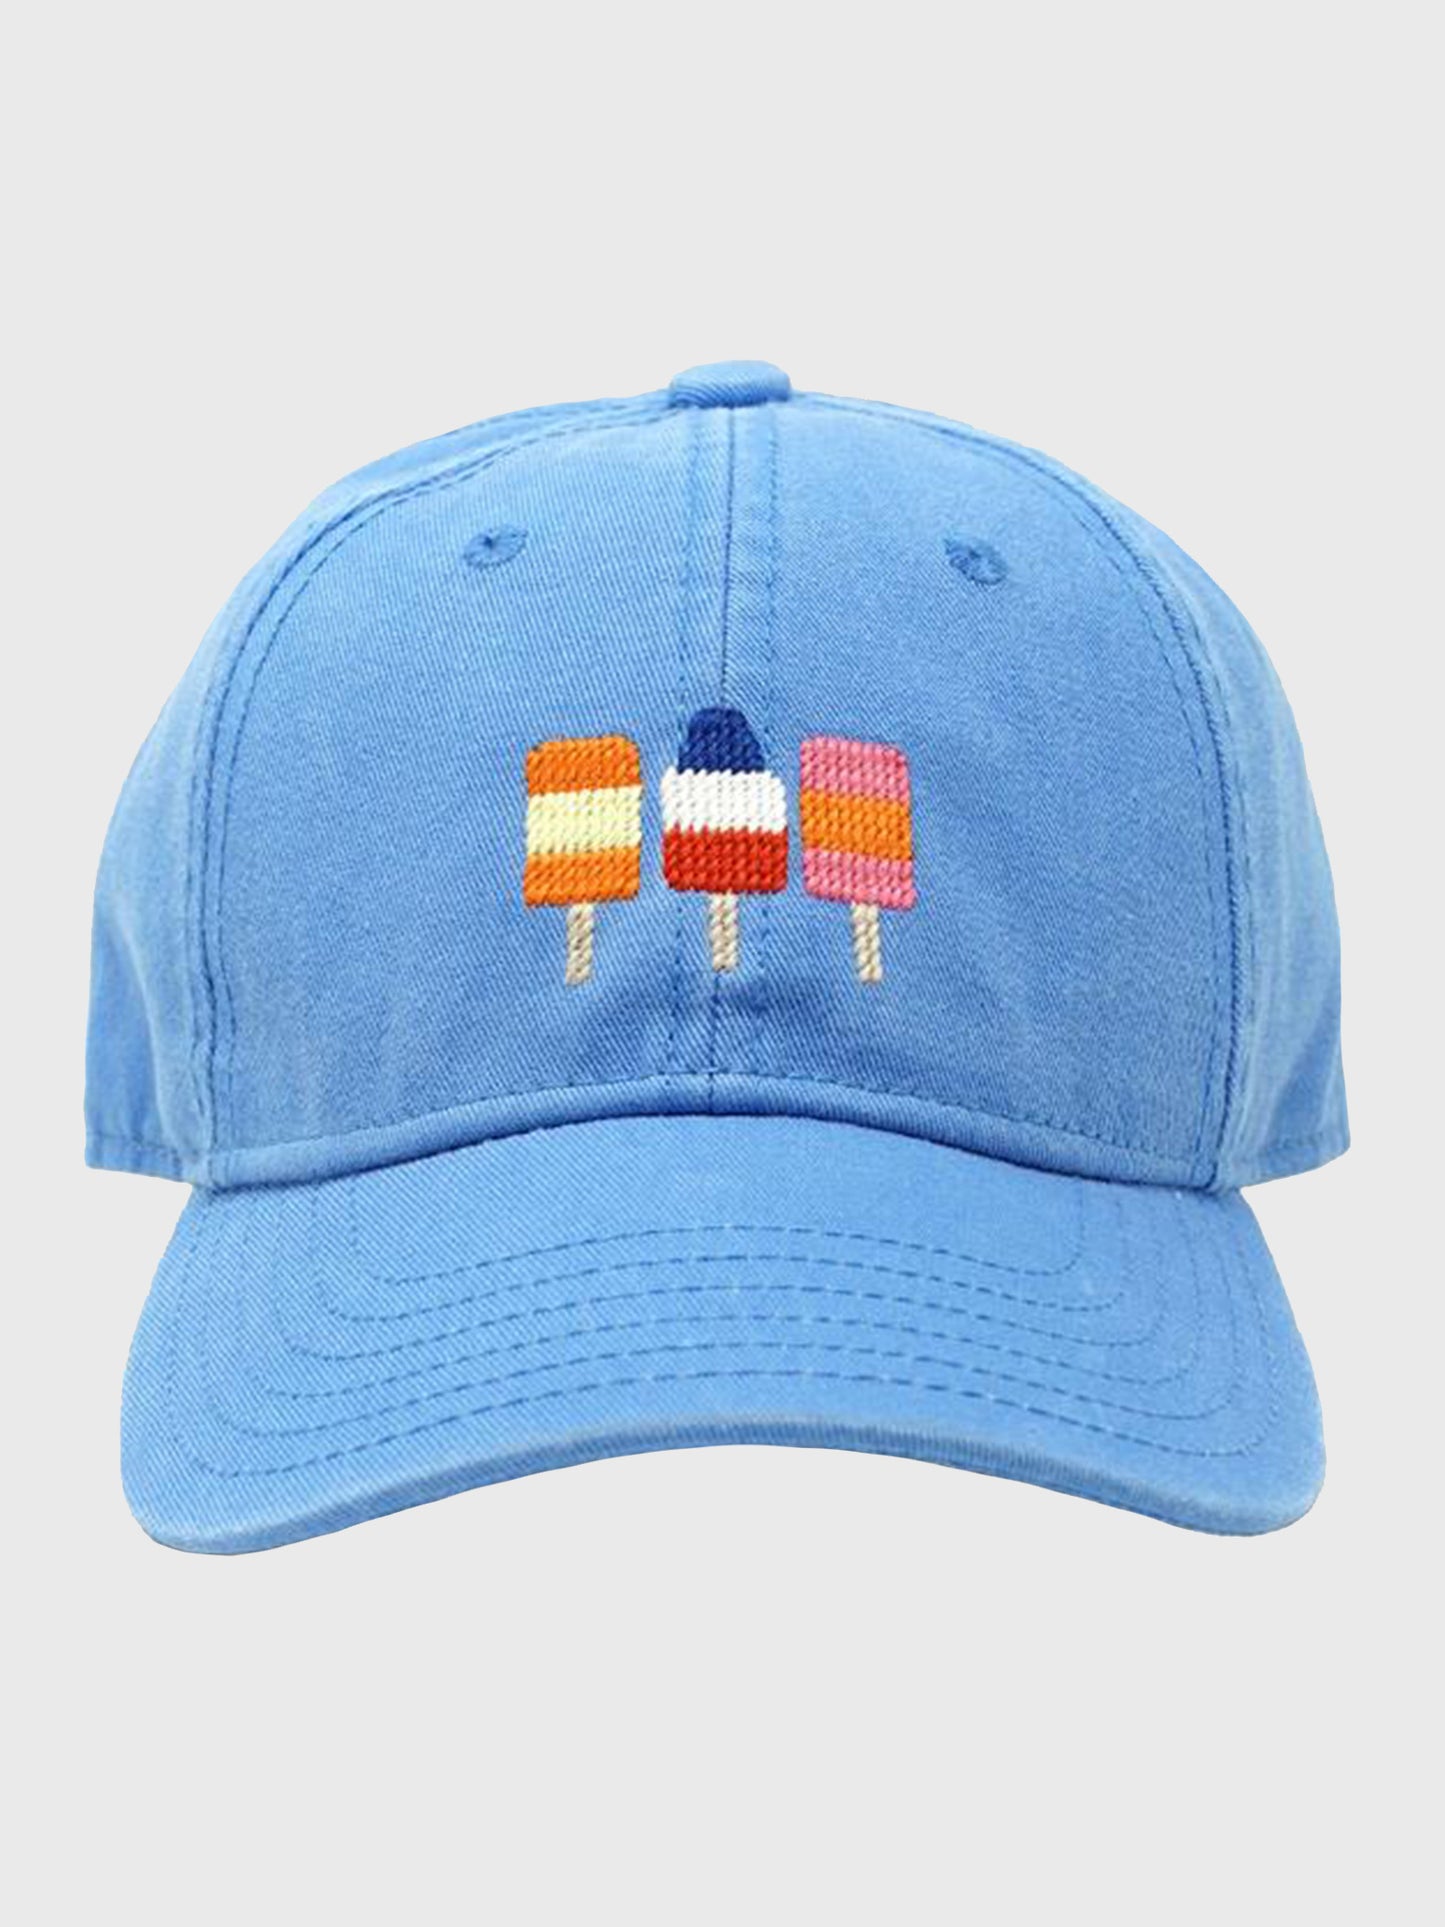 Harding Lane Kids' Popsicles Hat